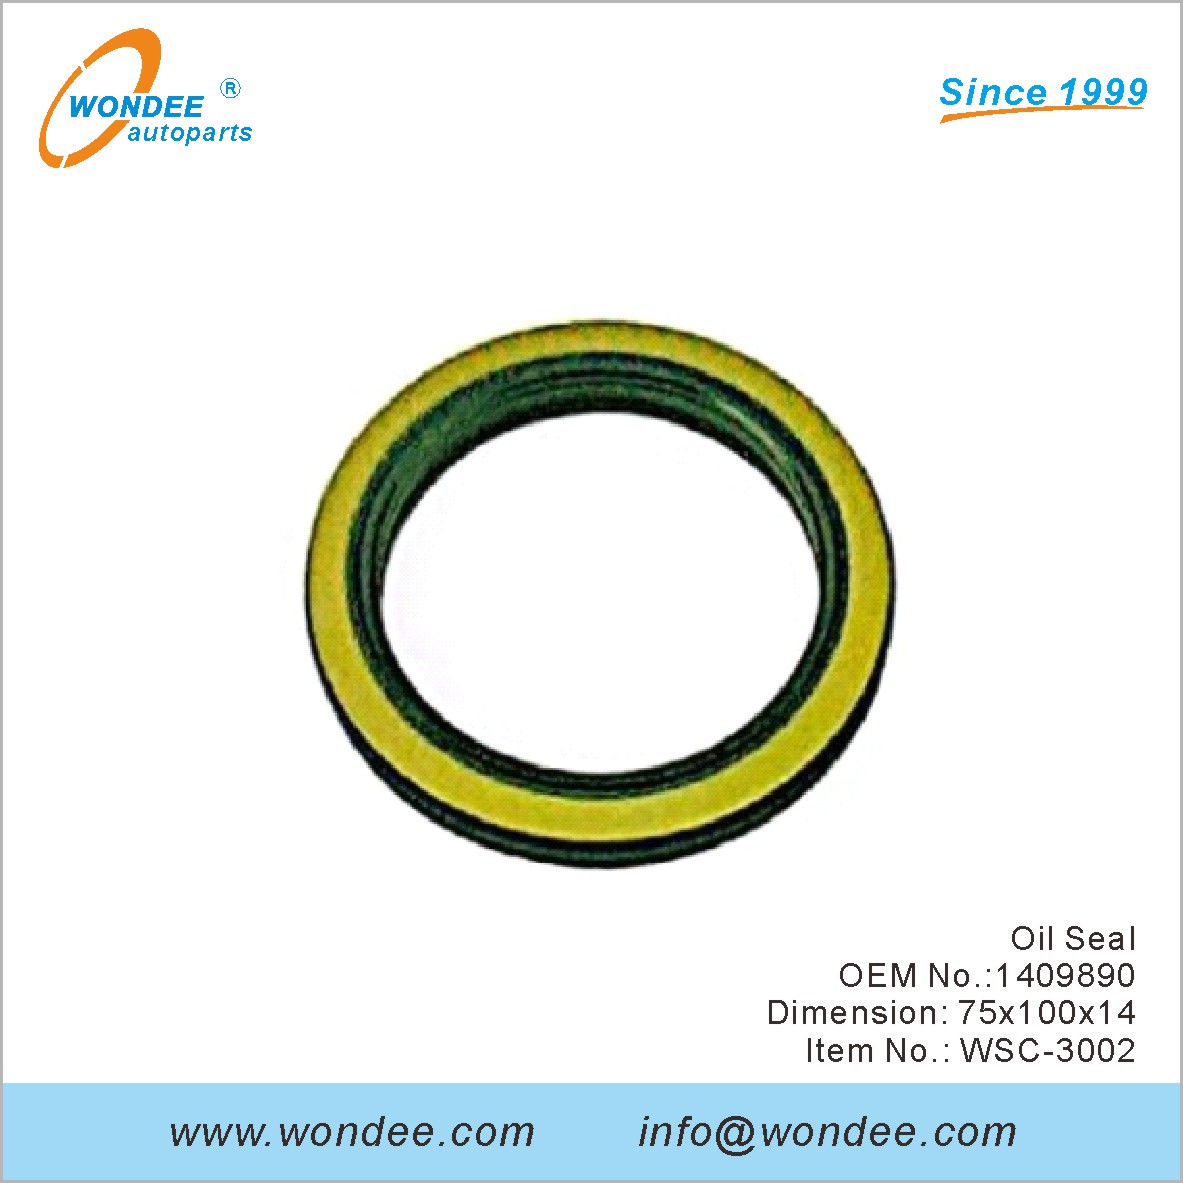 Oil Seal OEM 1409890 from WONDEE (2)